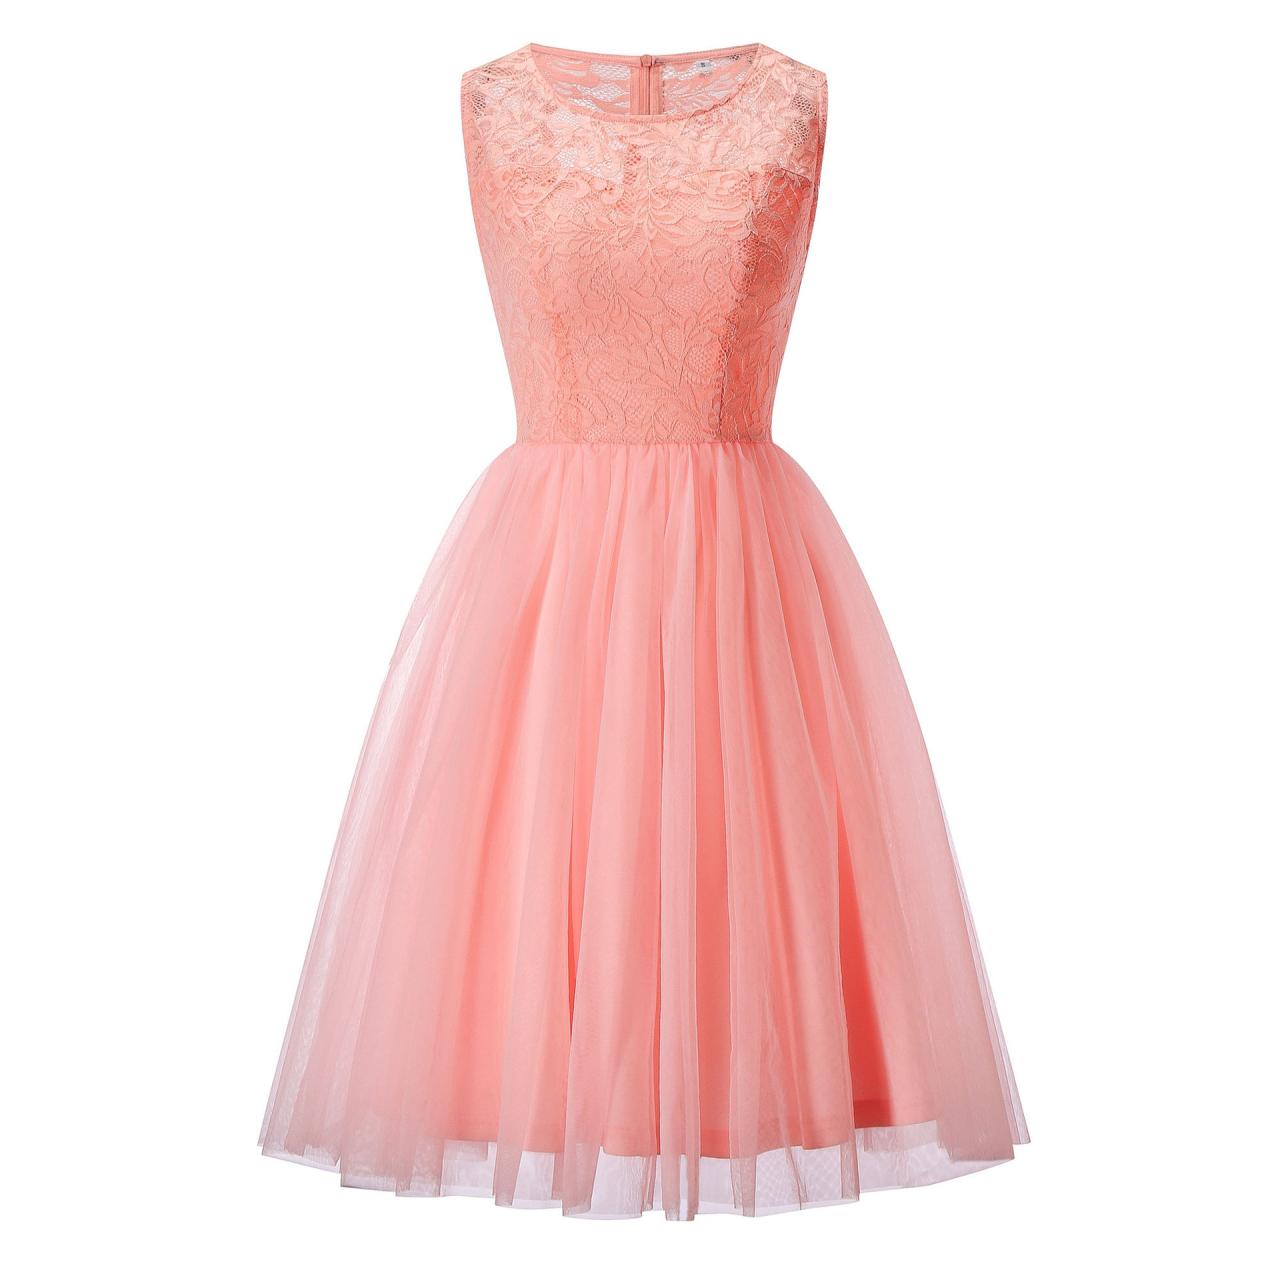 Fashion Lace Splicing Chiffon Knee Length Dress - Pink